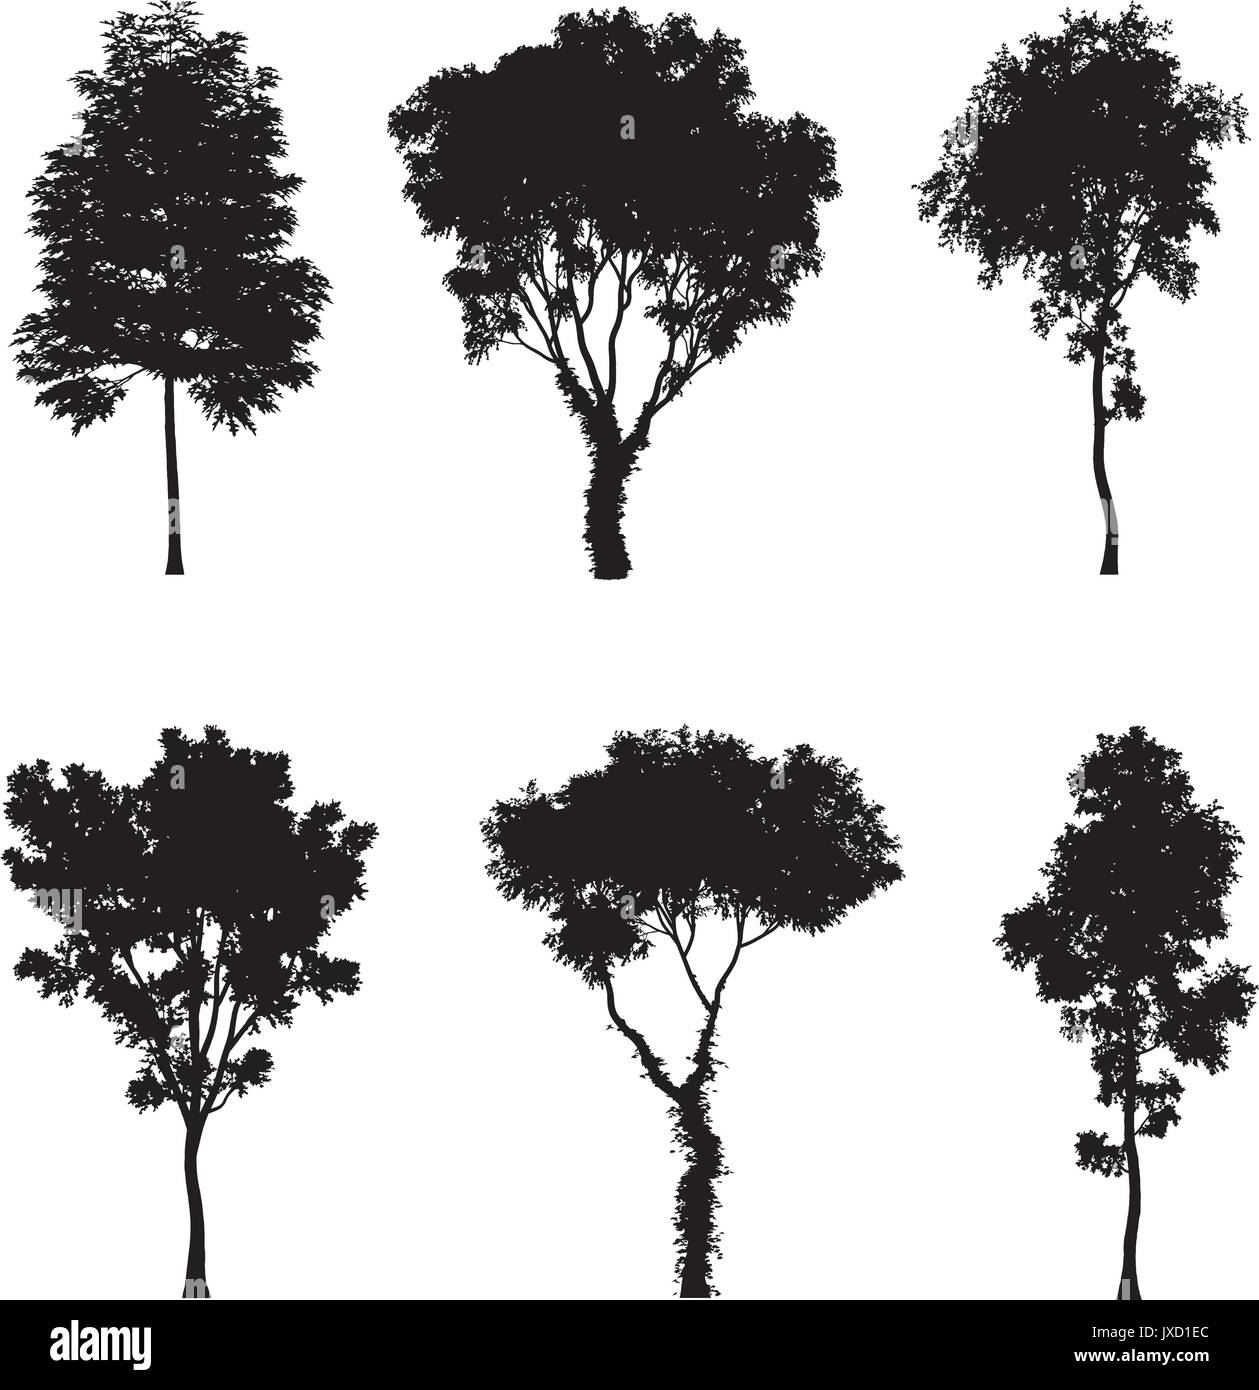 Vektor-Illustration der Baum Silhouetten Stock Vektor